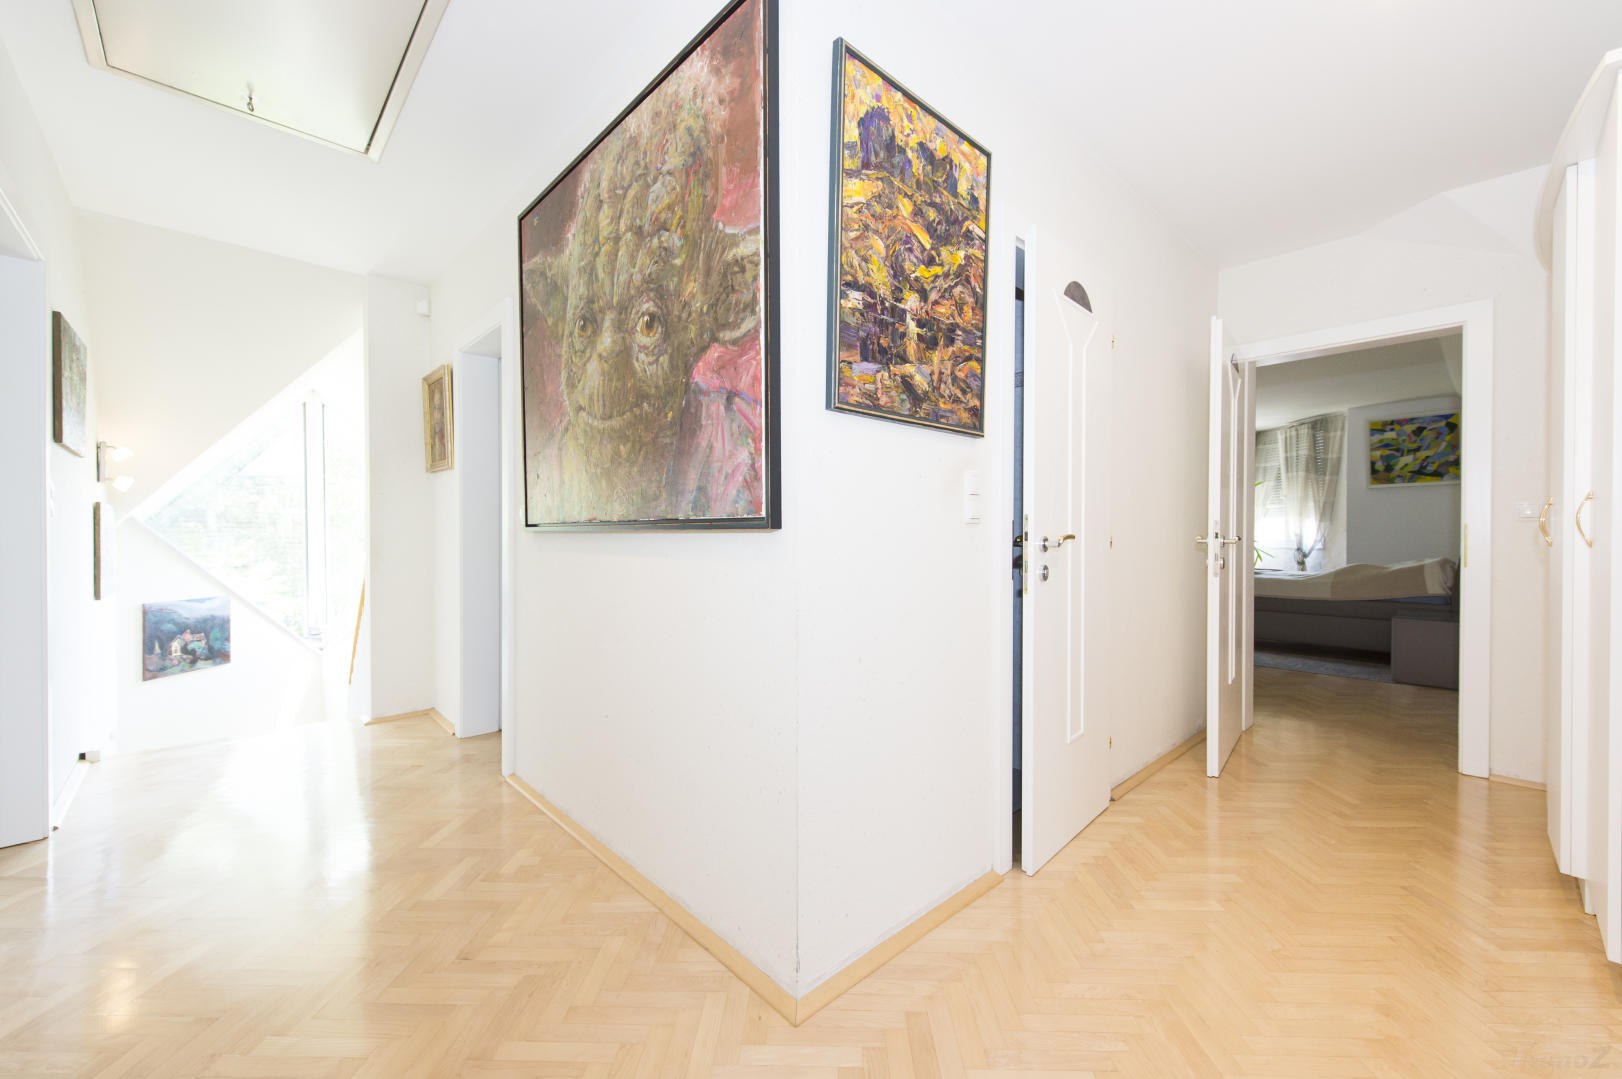 Haus zum Kaufen: Kogelbuch, 8302 Nestelbach bei Graz - Einfamilienhaus Graz Umgebung 76